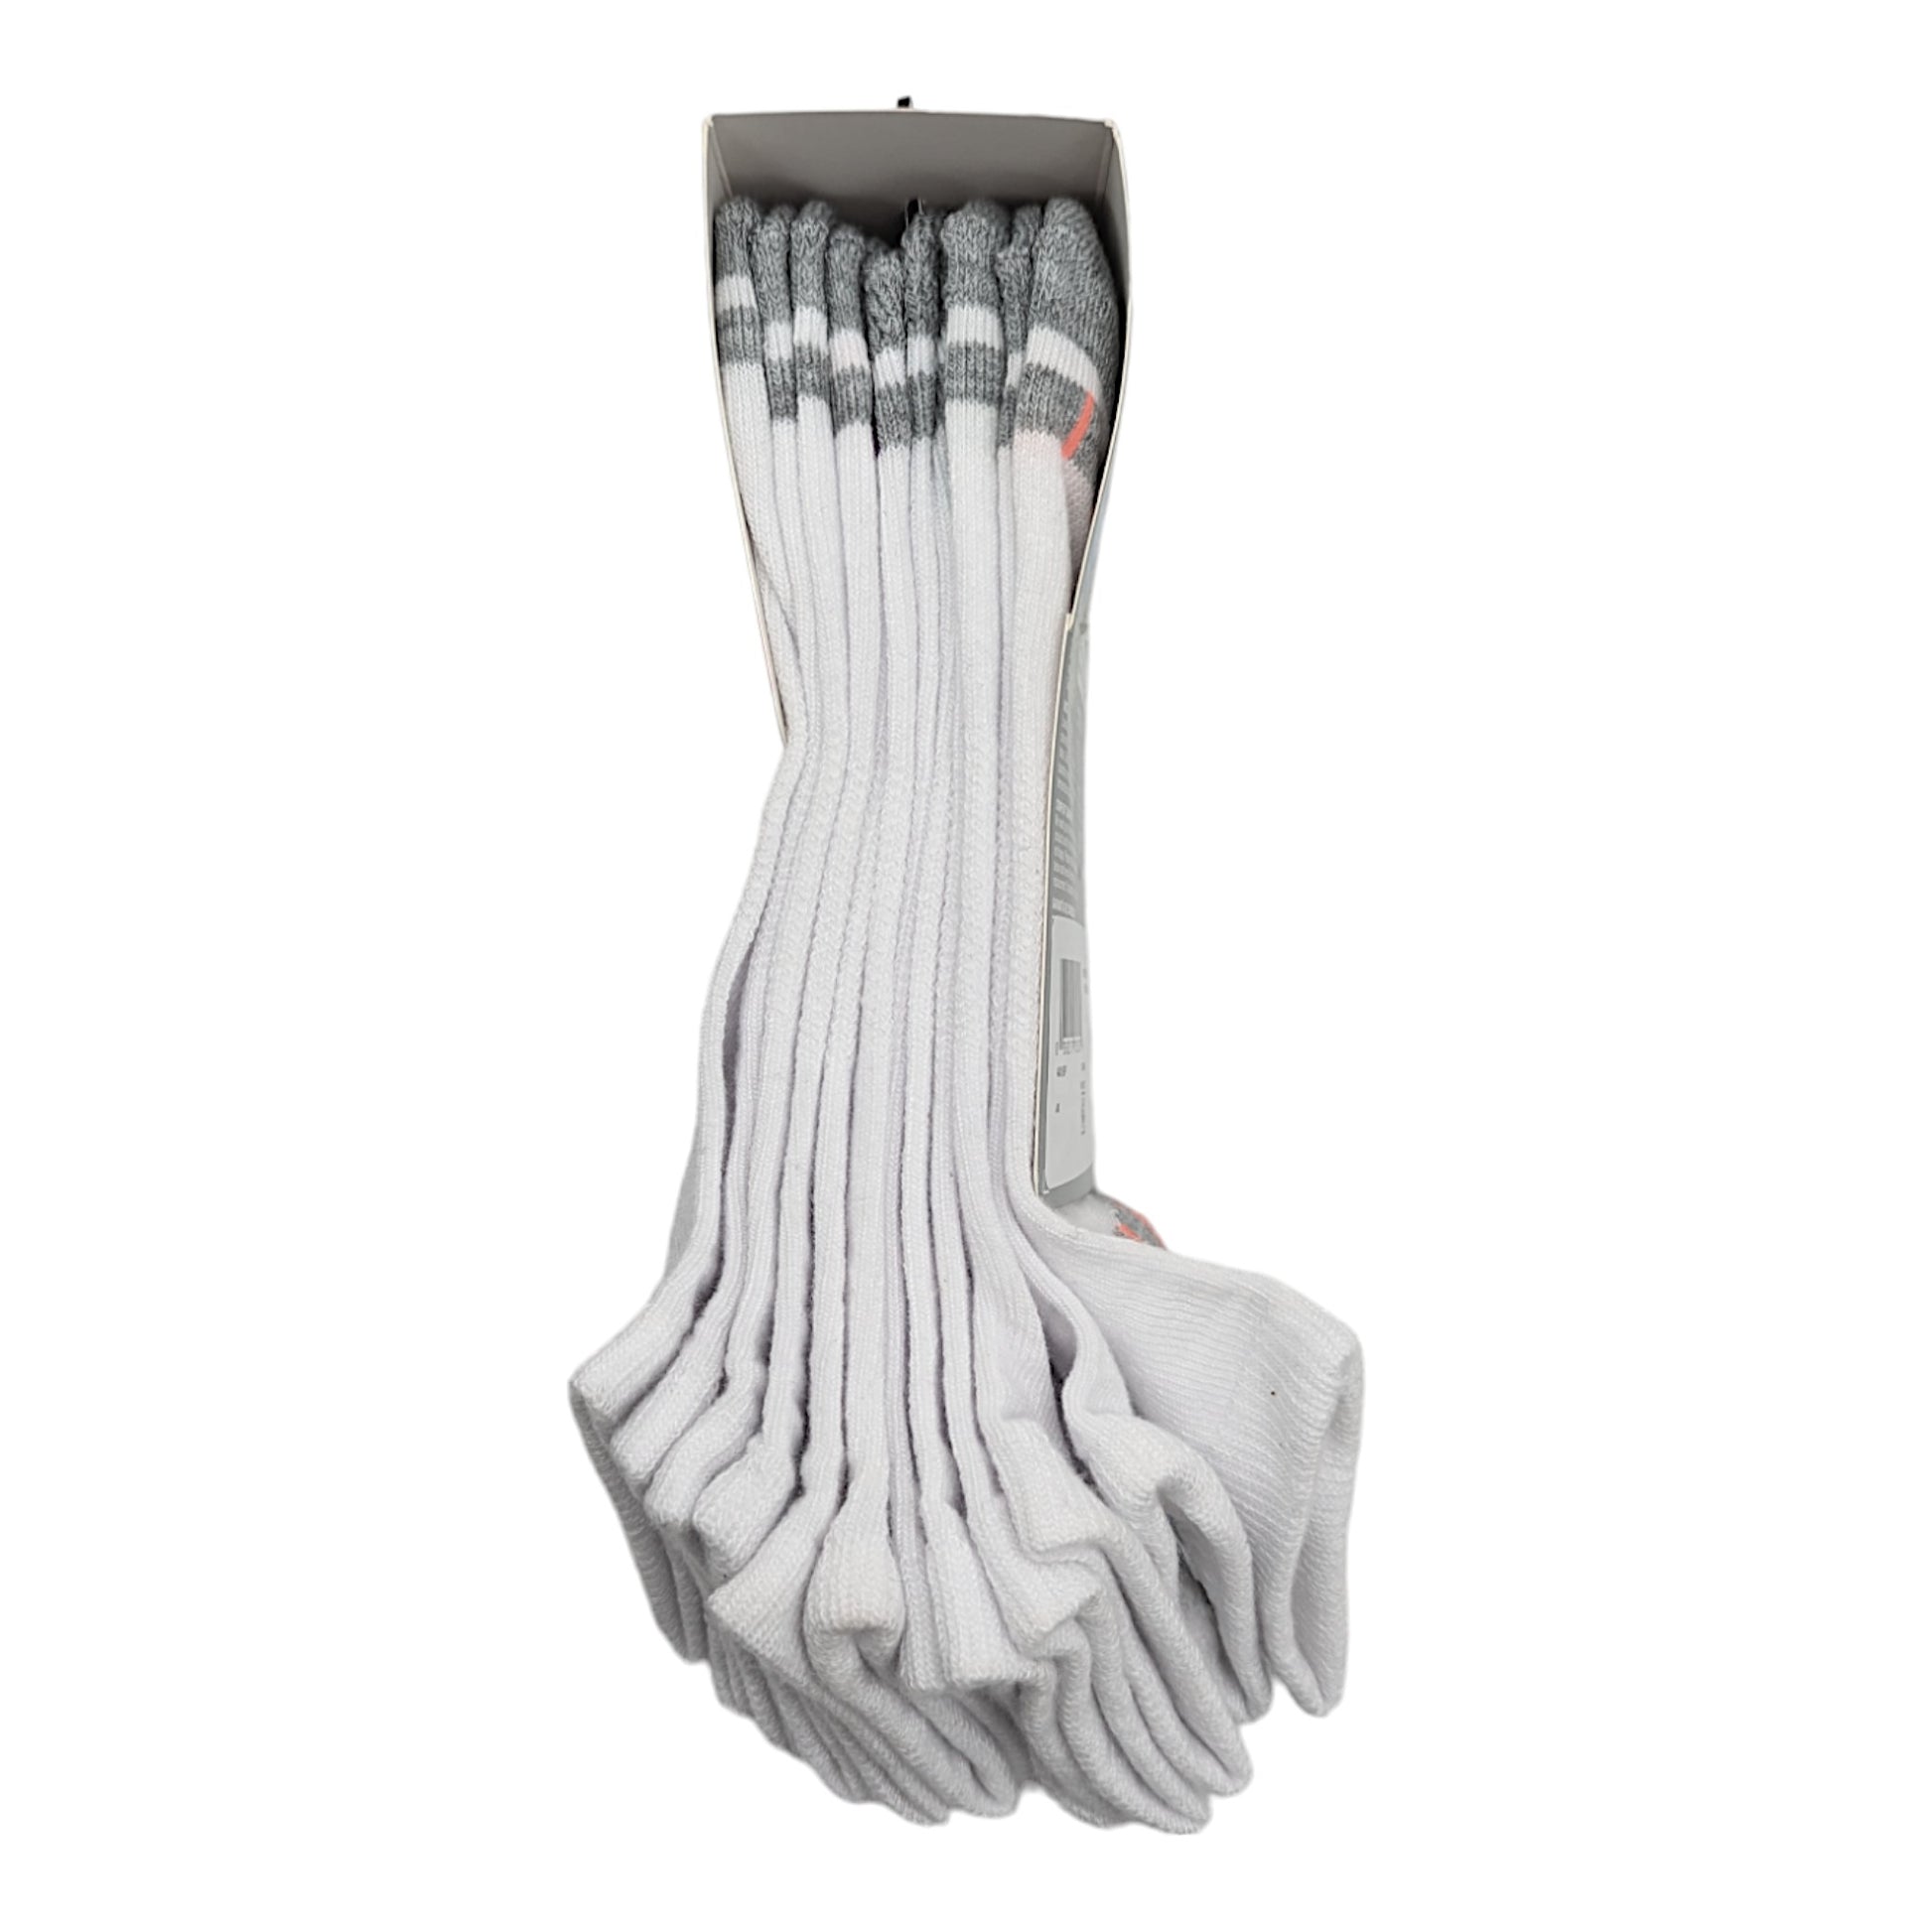 Hanes Women's Extended Size Socks